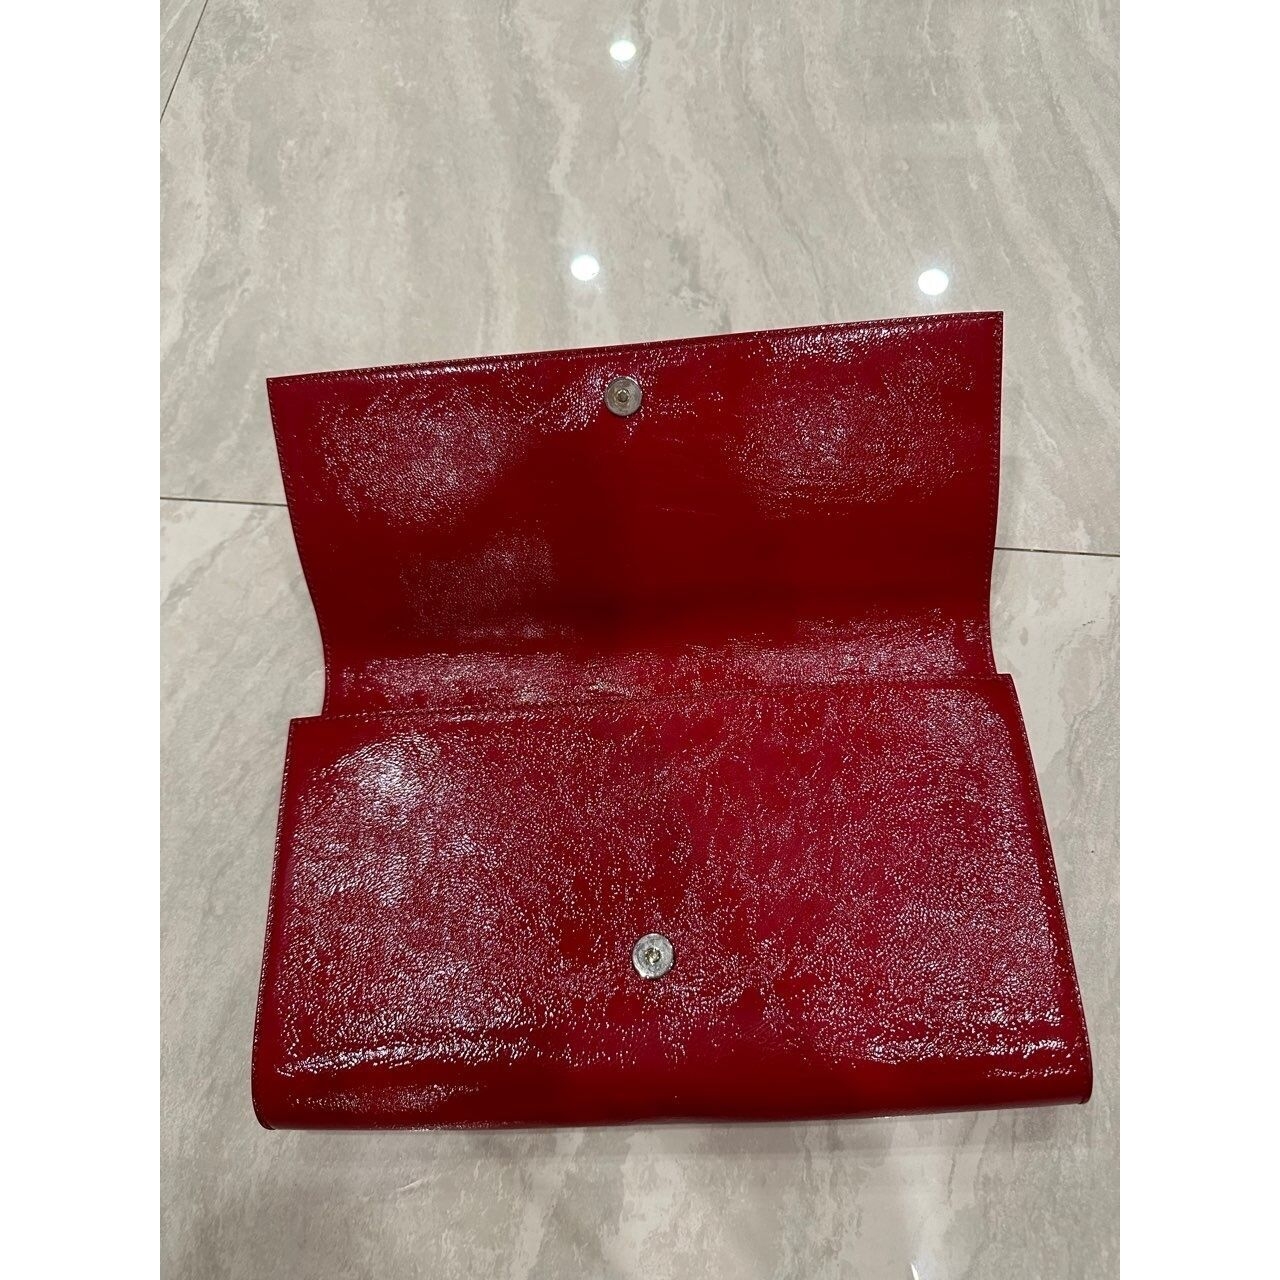 Yves Saint Laurent Monogram Belle De Jour Large Red Textured Patent Leather Clutch